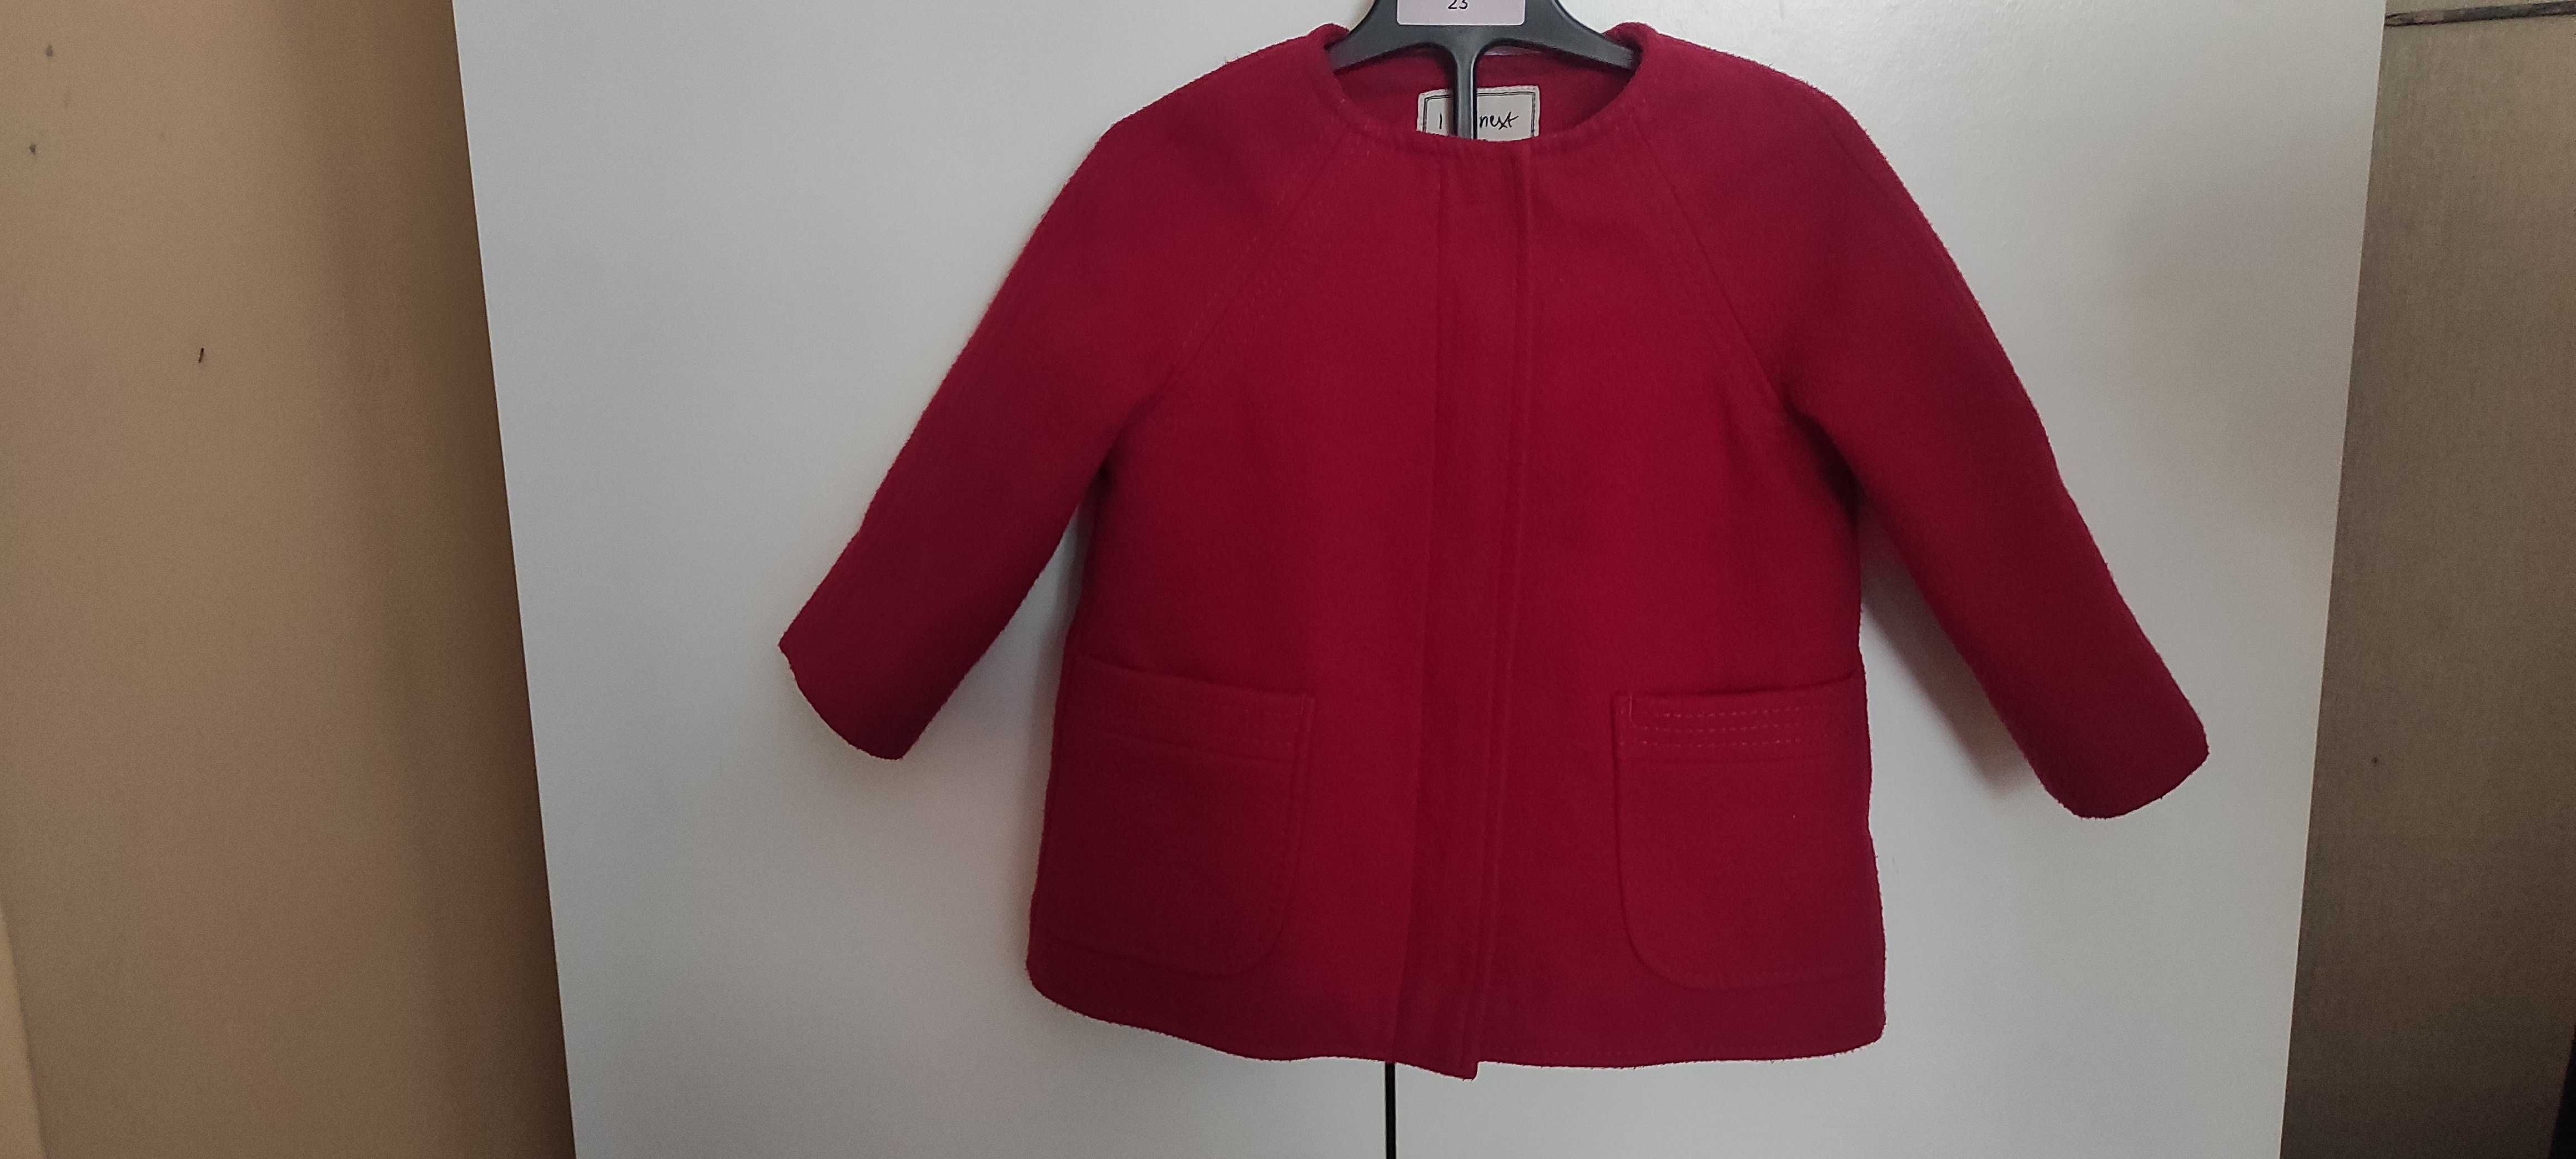 Palton roșu de lână pentru fetițe, marca Next, vârsta 1-3 ani, 70 lei